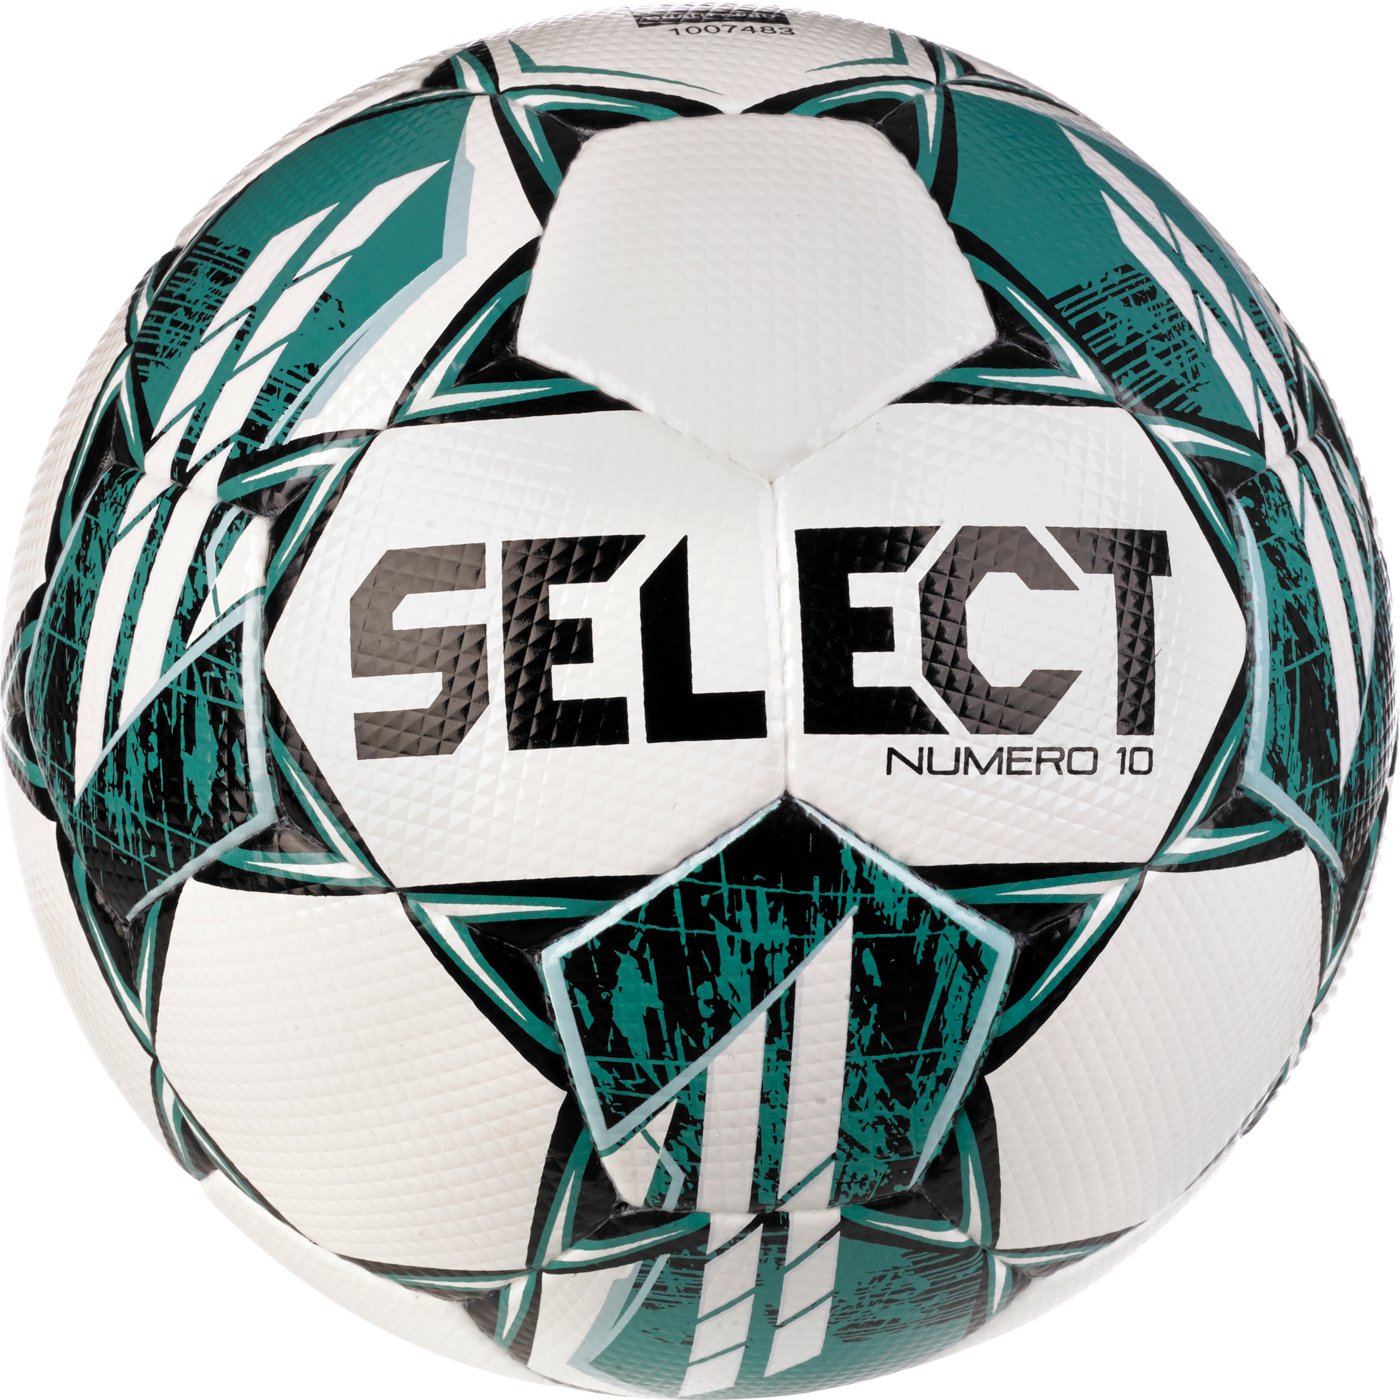 М'яч футбольний SELECT Numero 10 FIFA Quality Pro v23 (314) білий/зелений, 5, 5